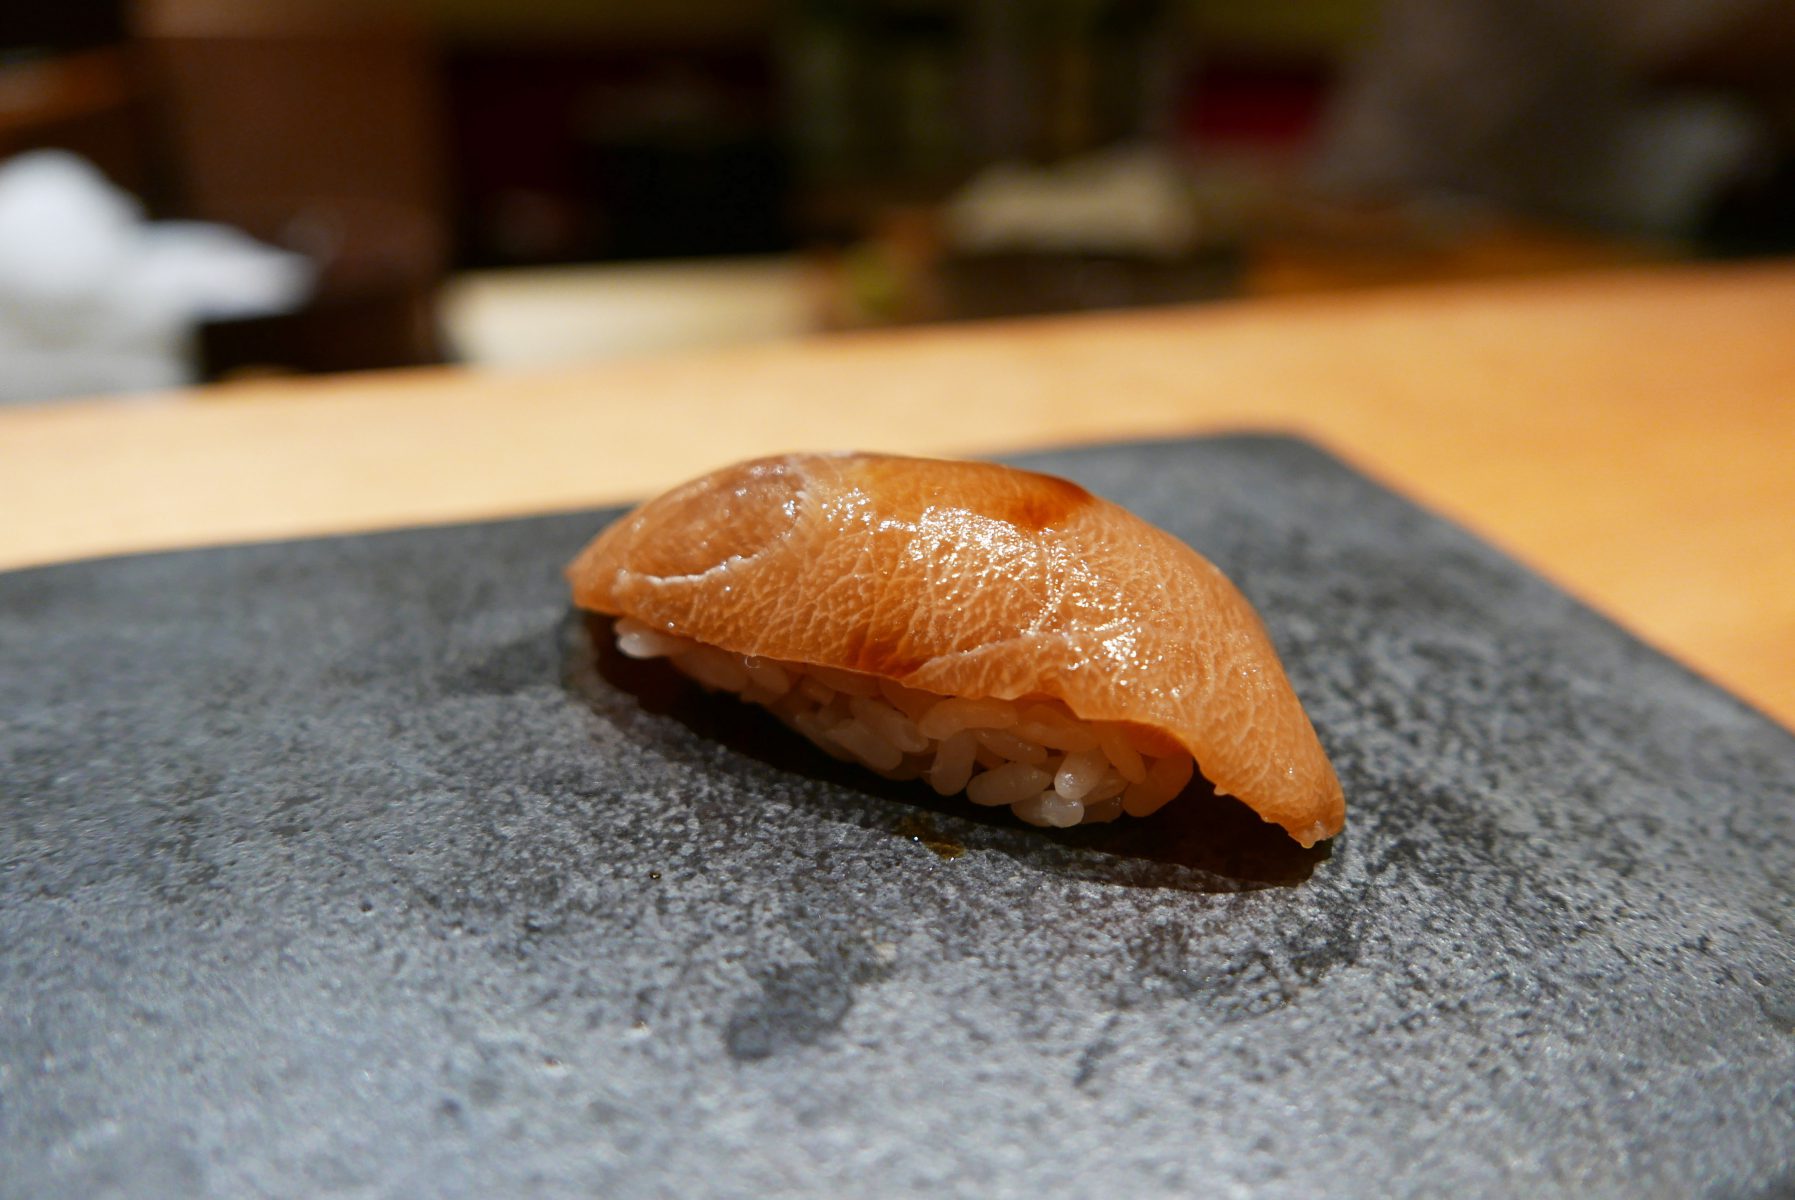 2 month aged blue marlin at Sushi Kimura, Tokyo.